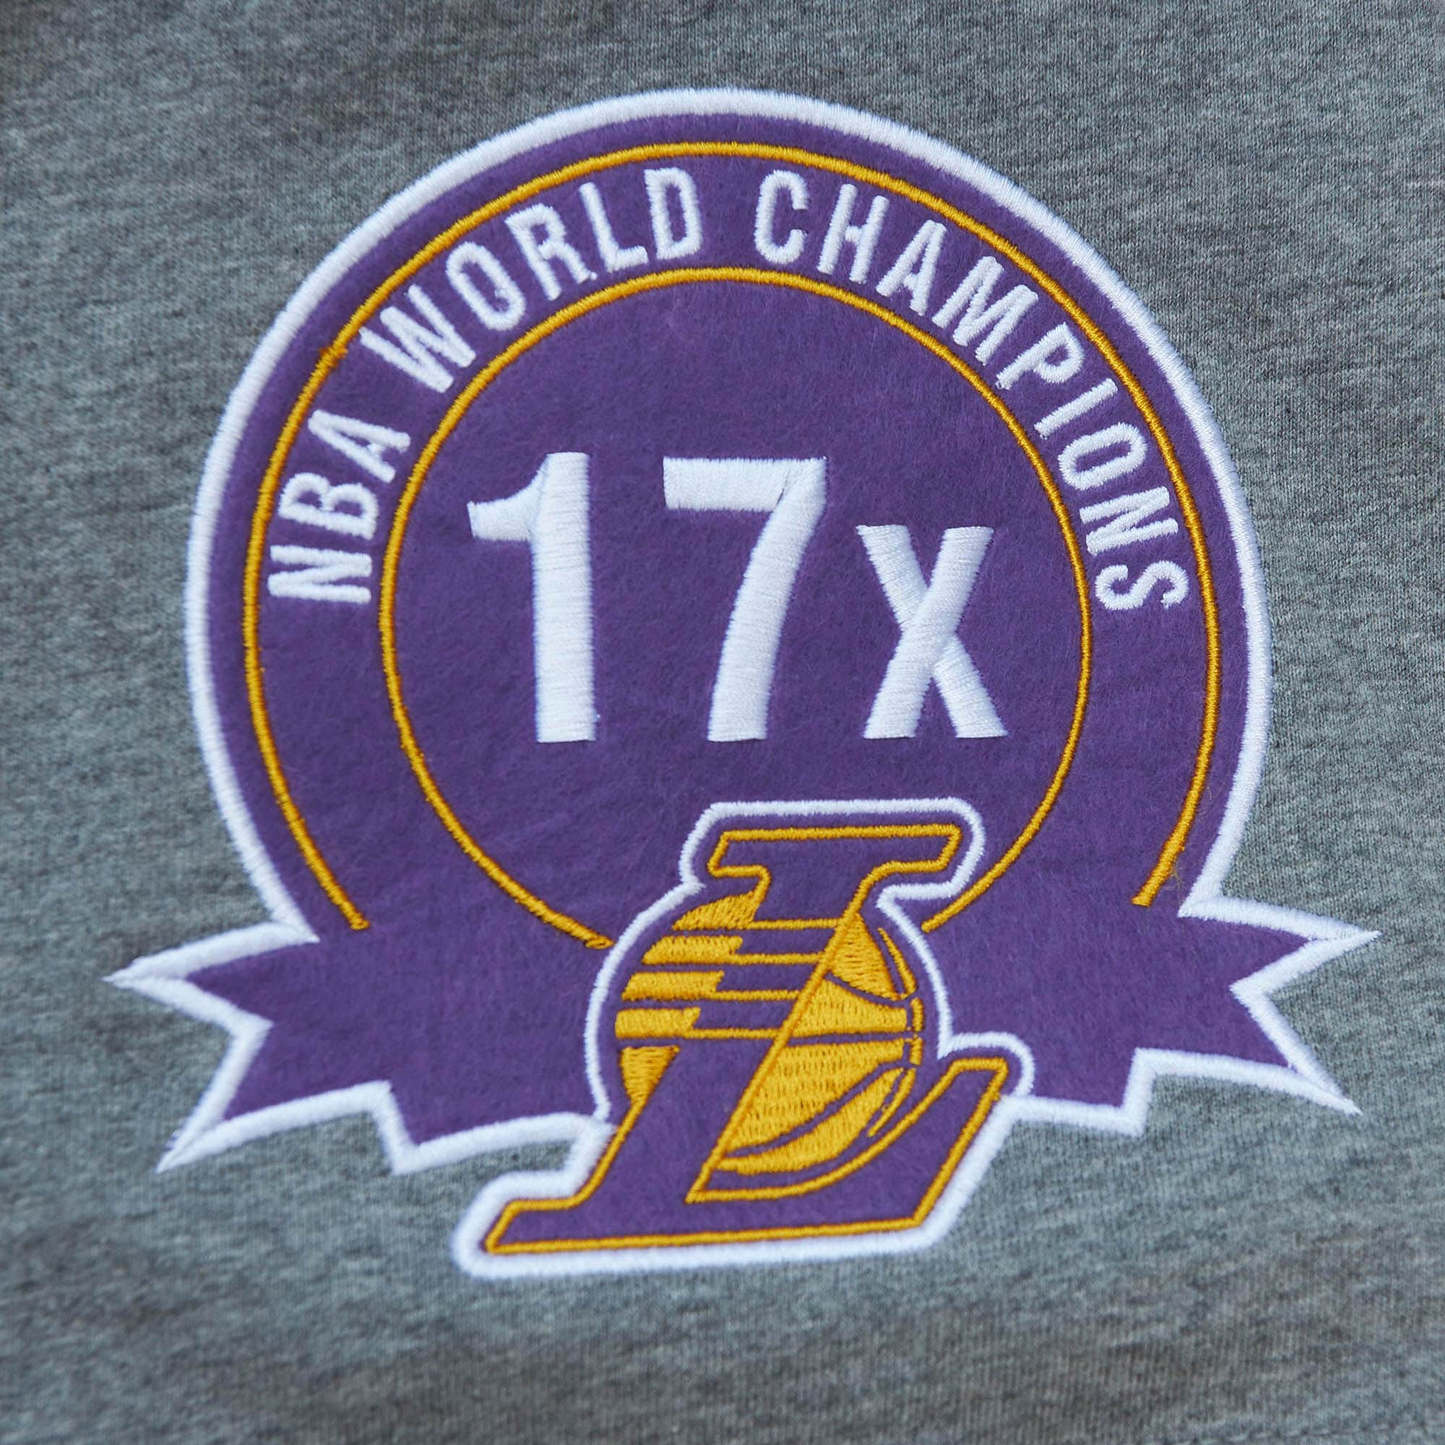 Los Angeles Lakers T-Shirts, Lakers Shirt, Locker Room Tees